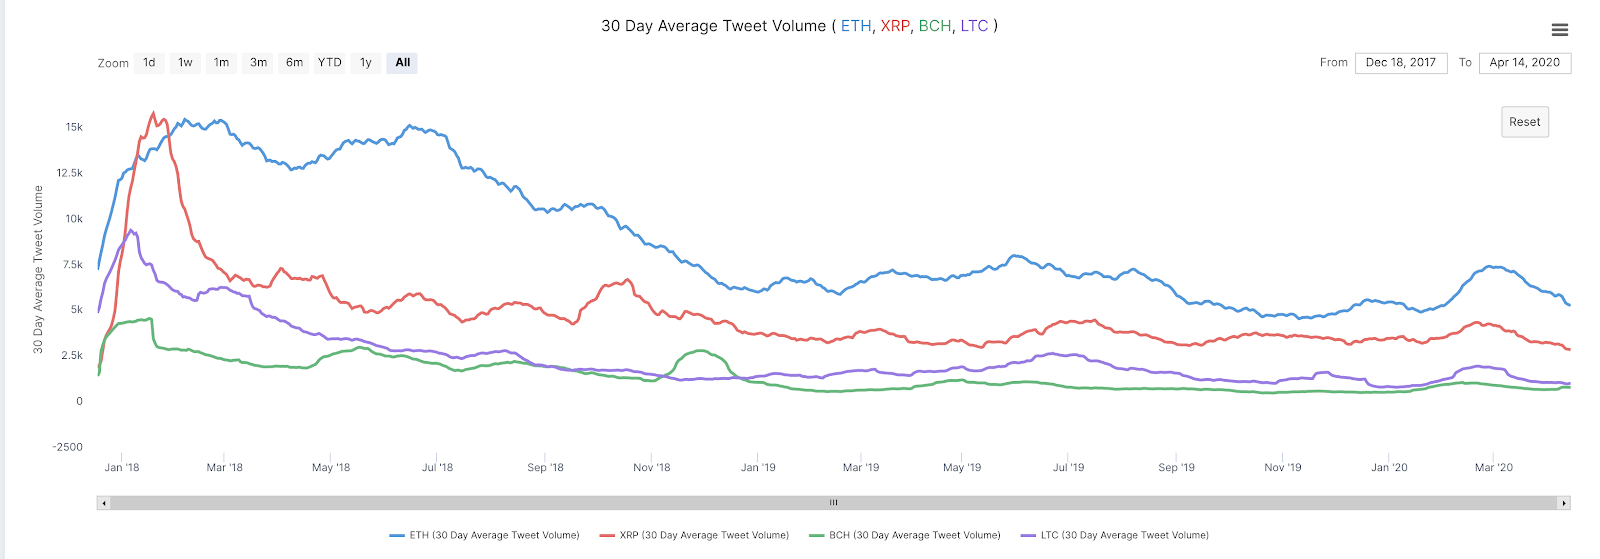 ETH, XRP, BCH, LTC 30-day average tweet volume vs. market cap